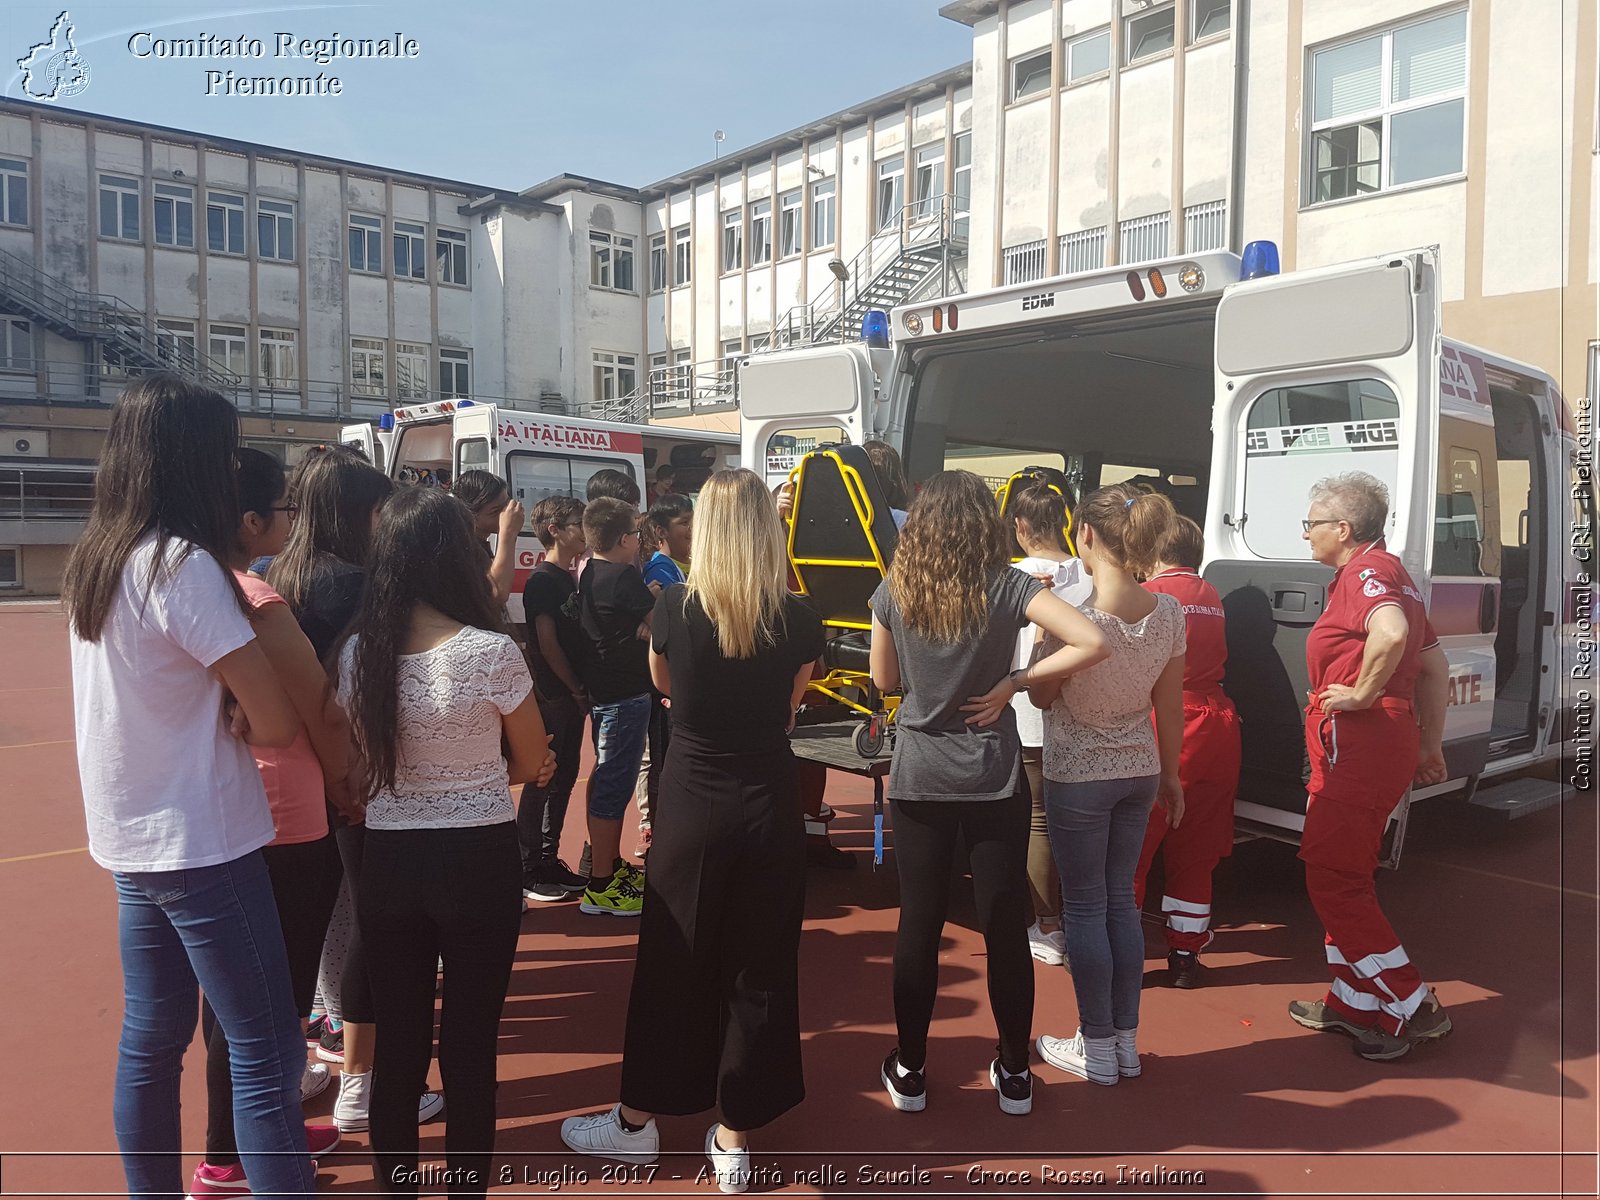 Galliate  8 Luglio 2017 - Attività nelle Scuole - Croce Rossa Italiana- Comitato Regionale del Piemonte